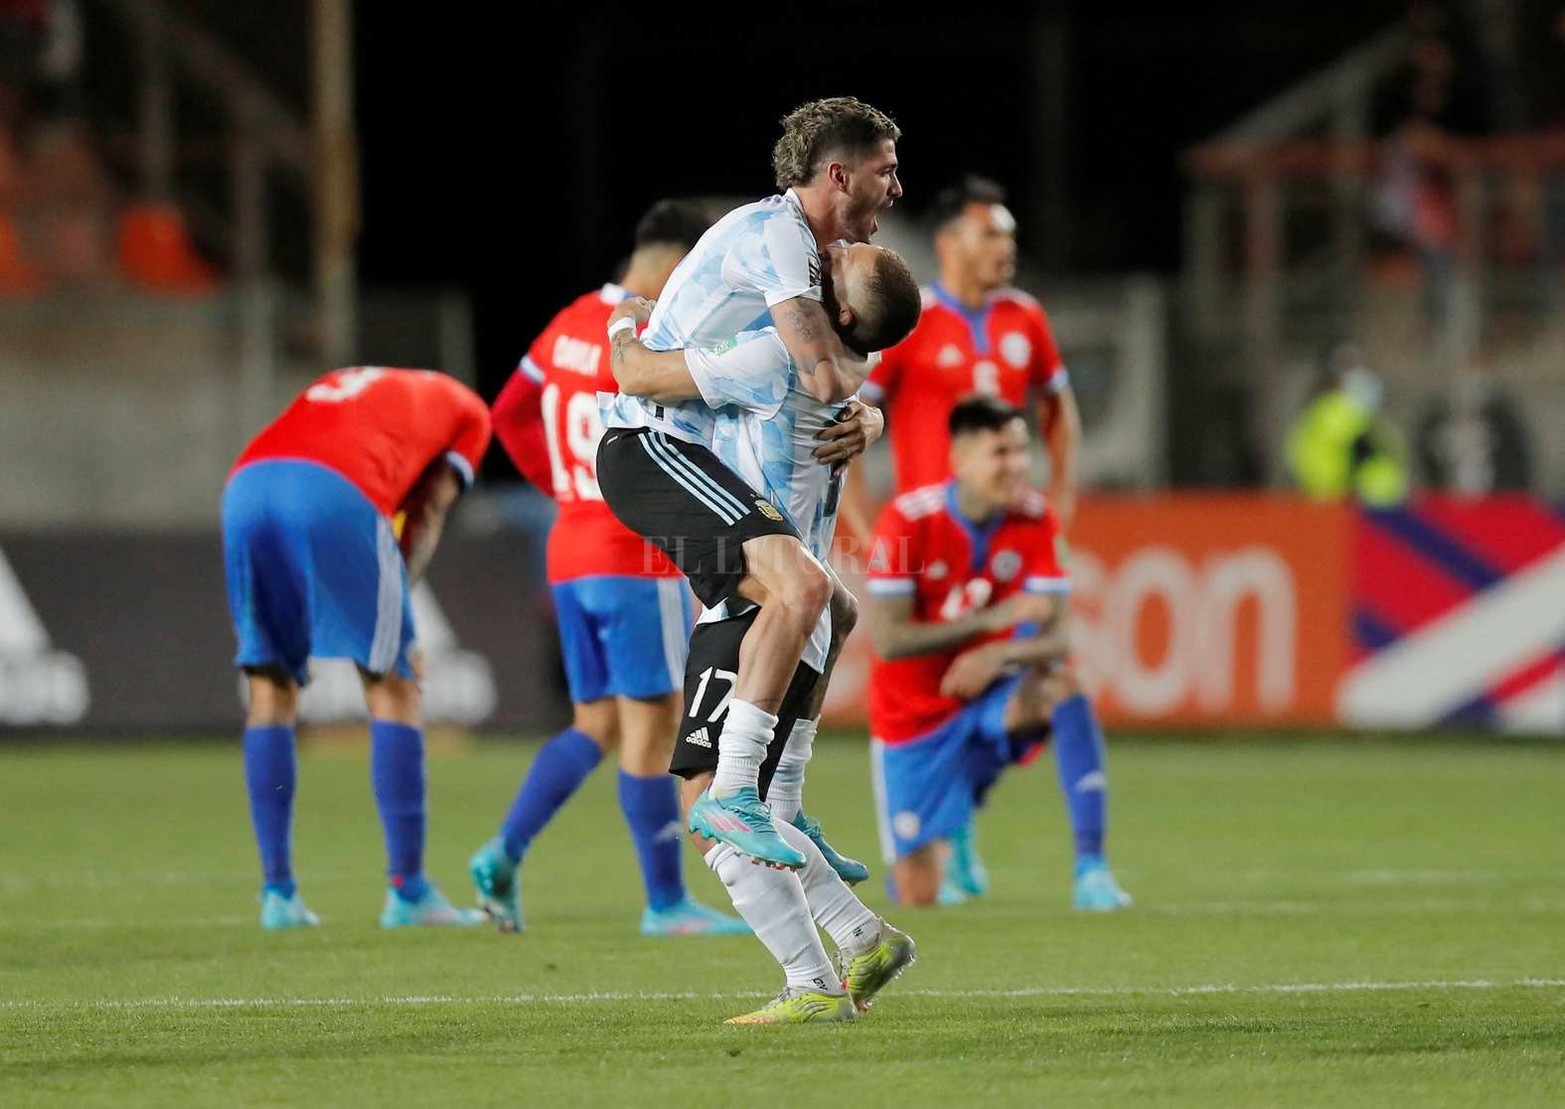 Por las eliminatoria para ingresar al Mundial de fútbol, Argentina venció 2 a 1 a Chile. Lleva 28 partidos sin perder.